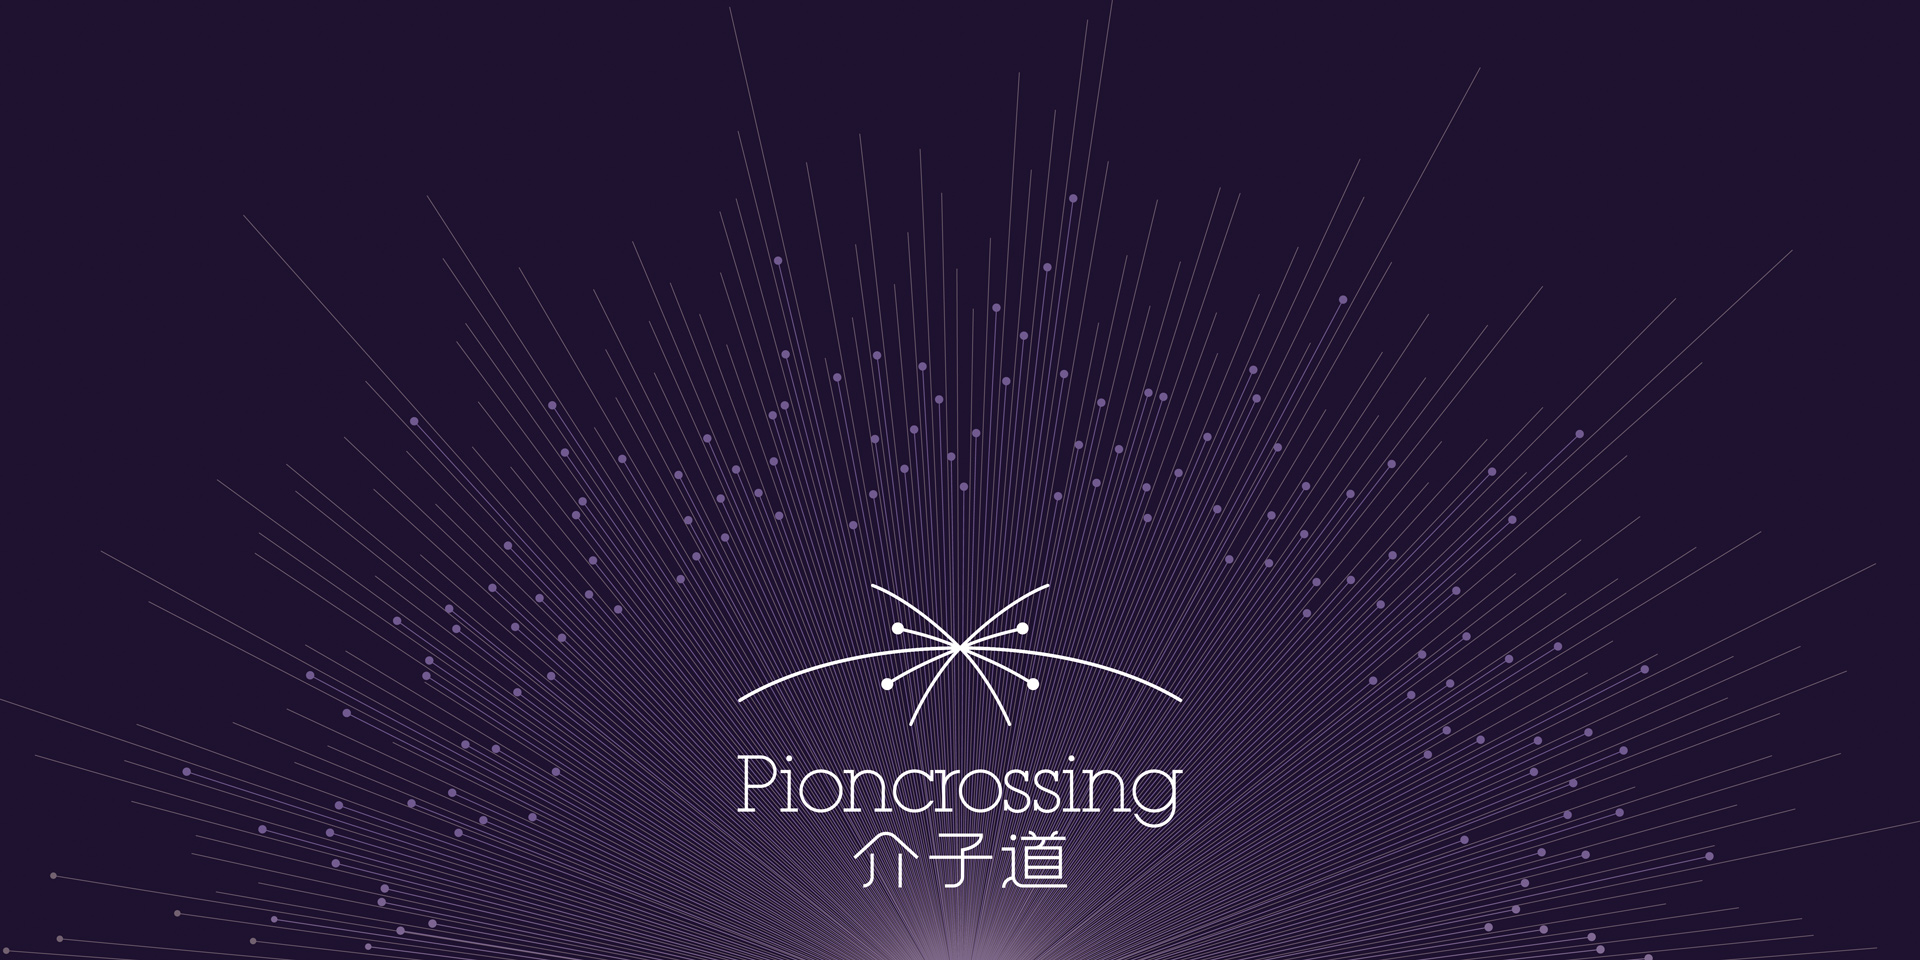 Pioncrossing_2.jpg